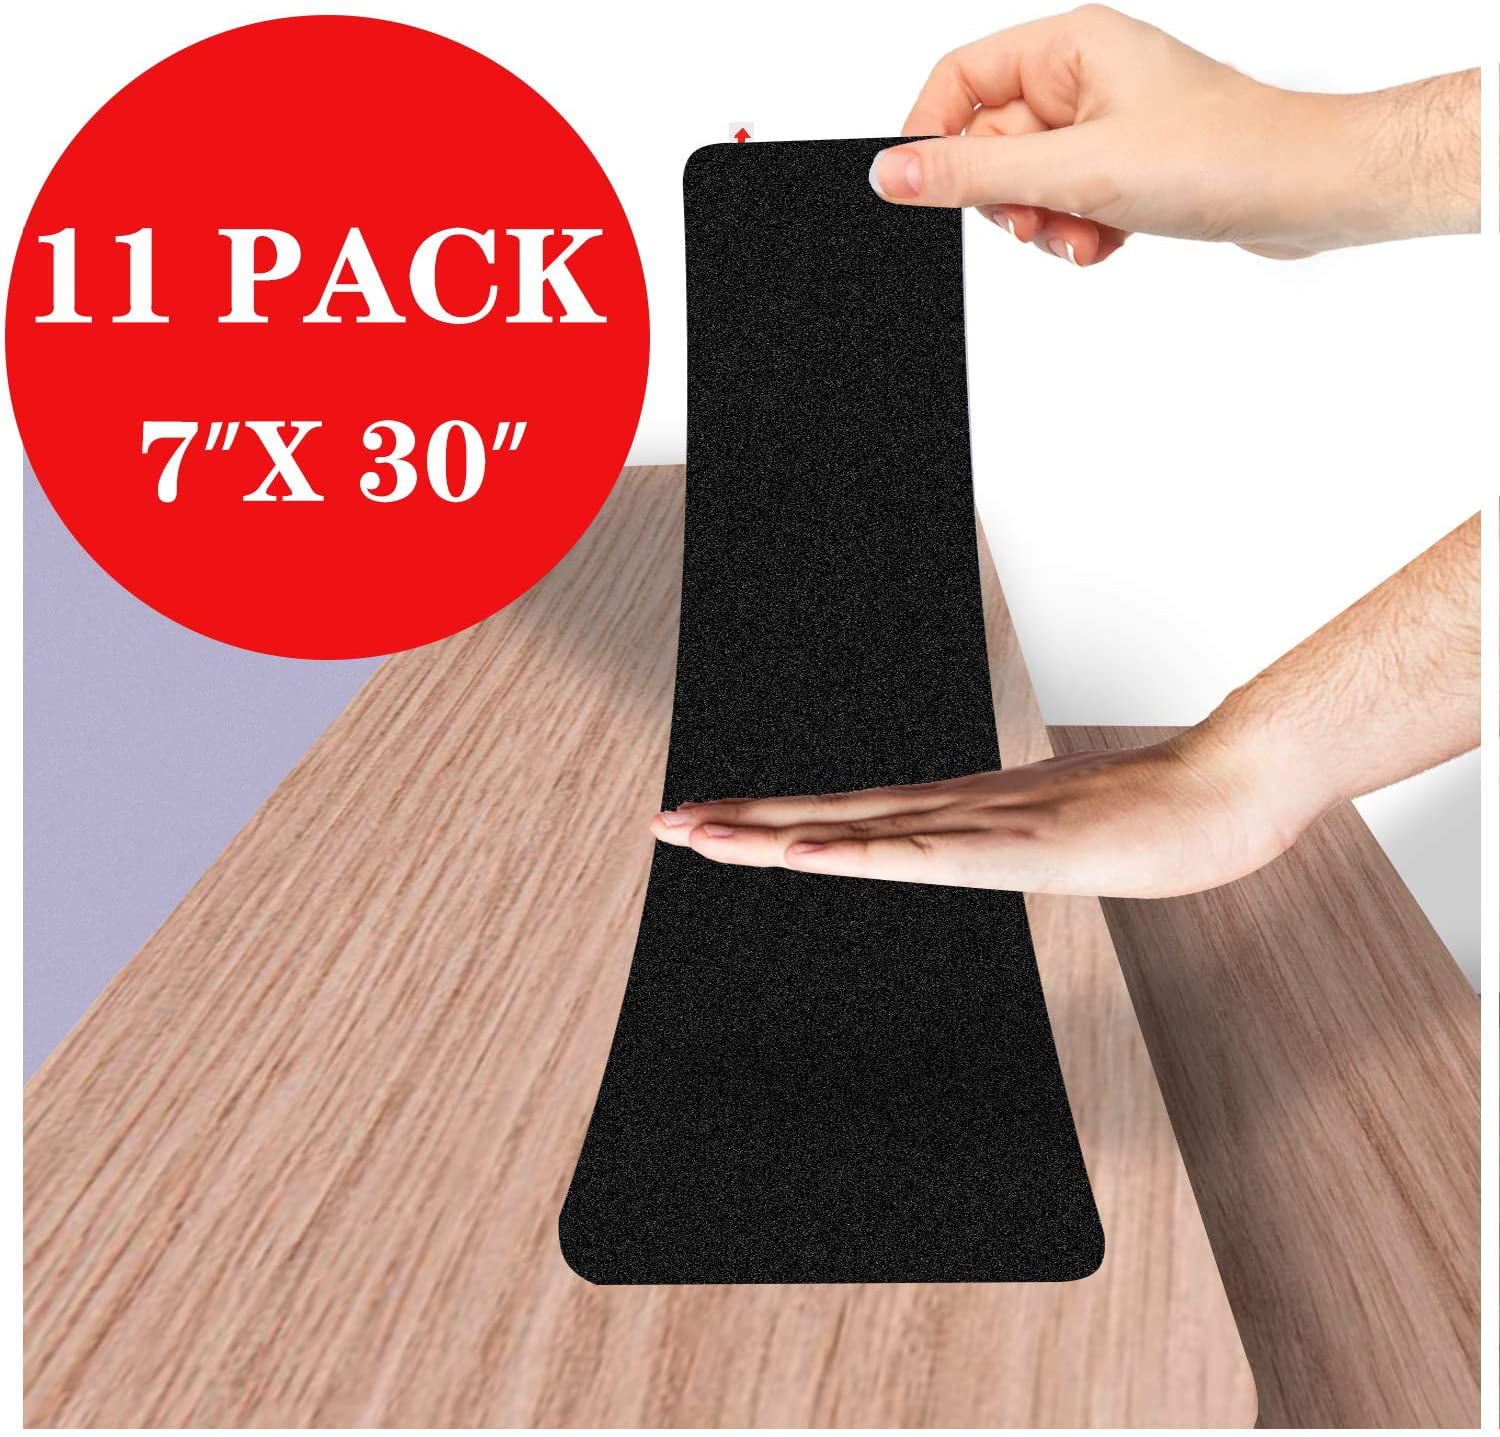 Stair Treads Non-Slip Tape Anti Slip Strips Carpet Tread Pads For Steps 7 Pack 